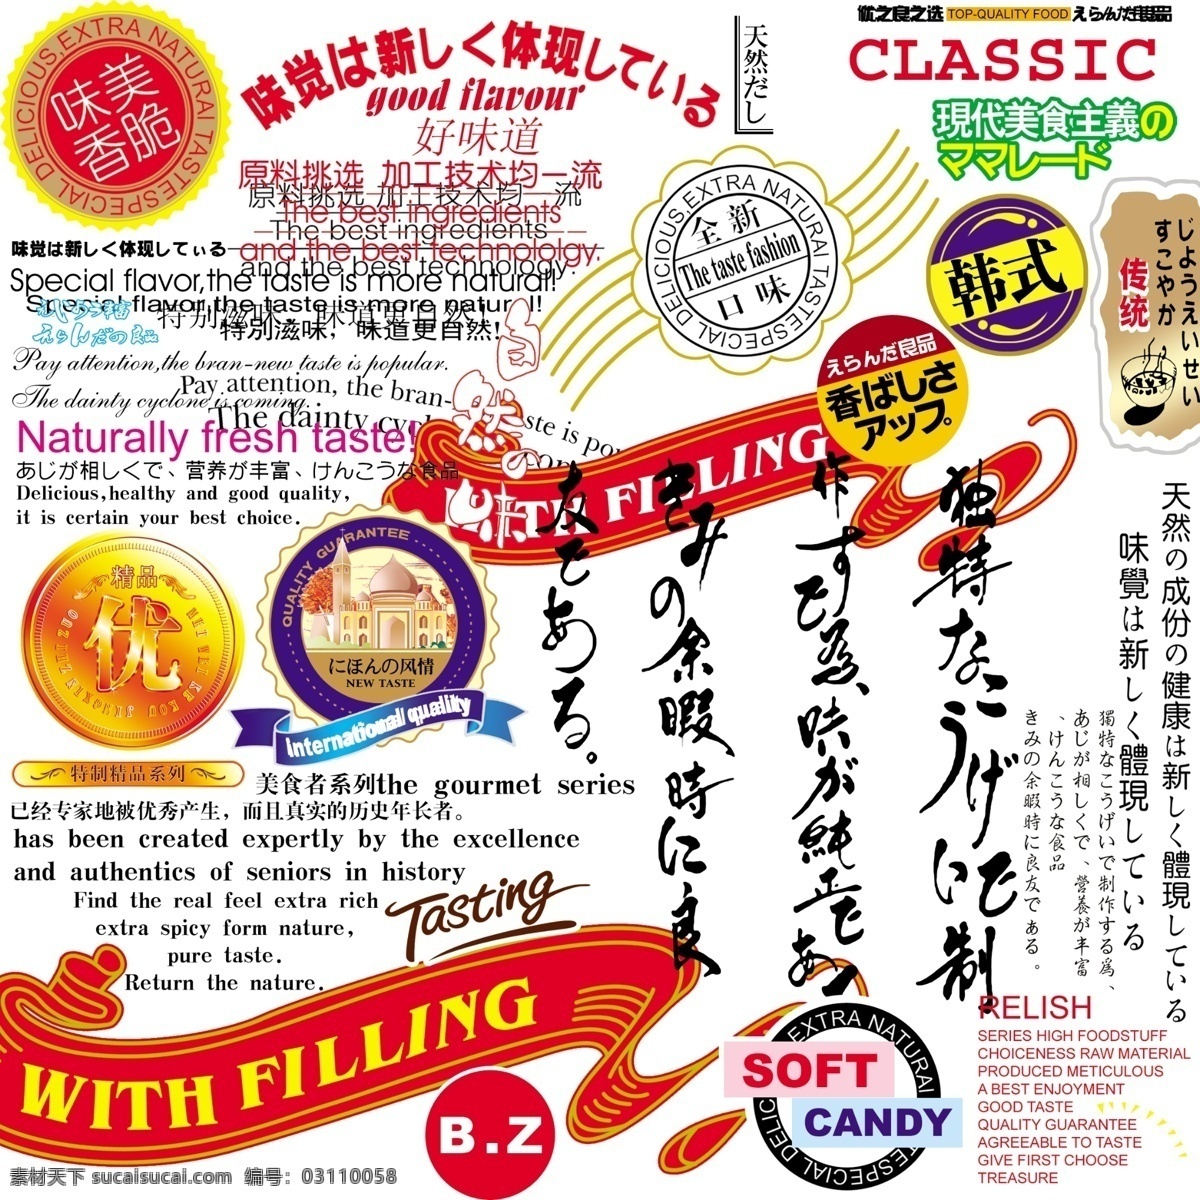 食品包装 广告语 格式 日式 风格 自然 活泼 psd源文件